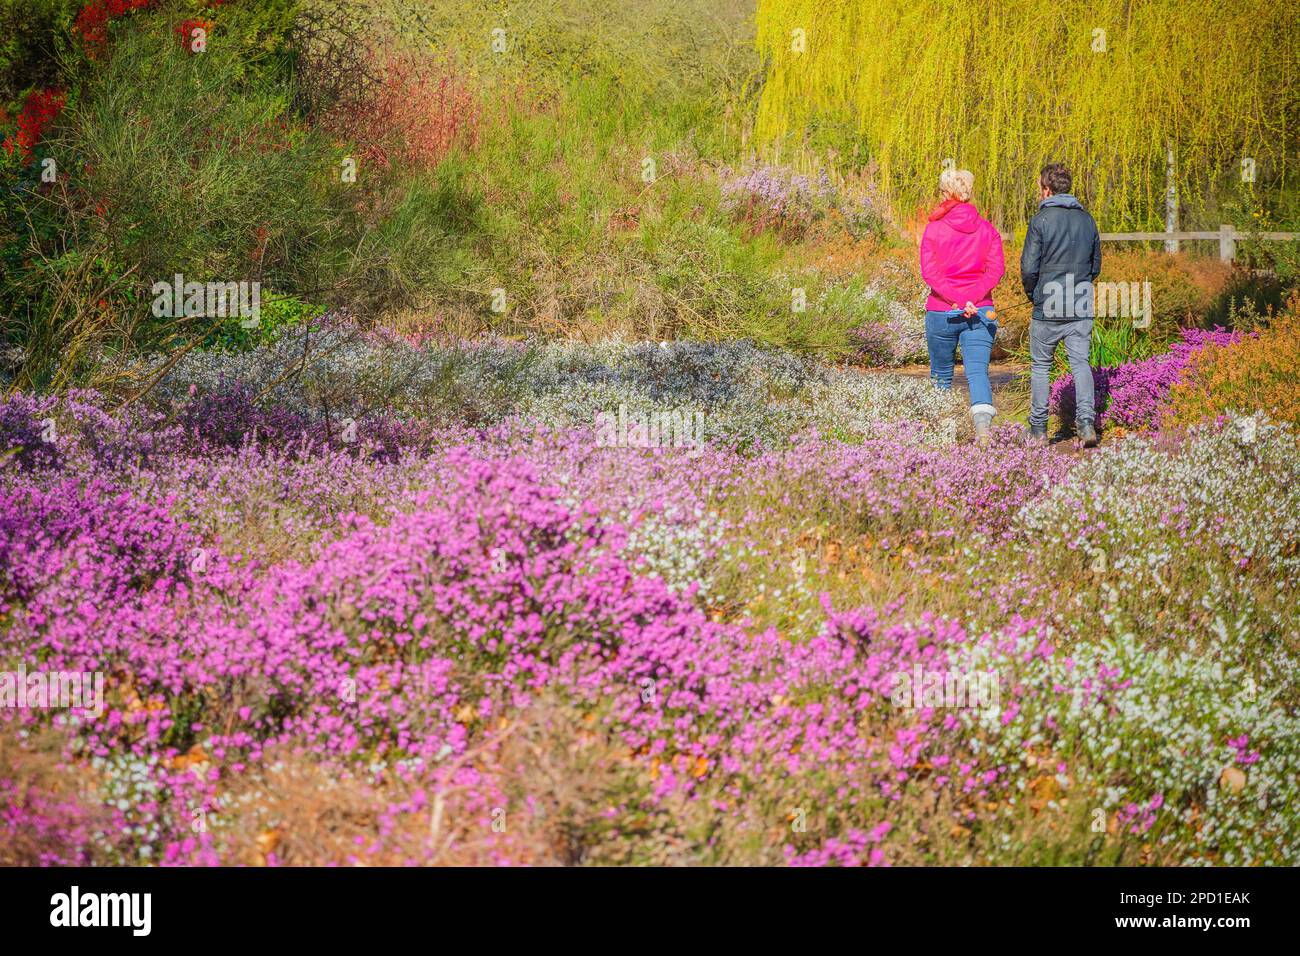 Londres, Royaume-Uni - 5 avril 2018 - touristes marchant à travers fleurs de bruyère en pleine fleur dans Isabella Plantation, un jardin de bois dans le parc de Richmond Banque D'Images